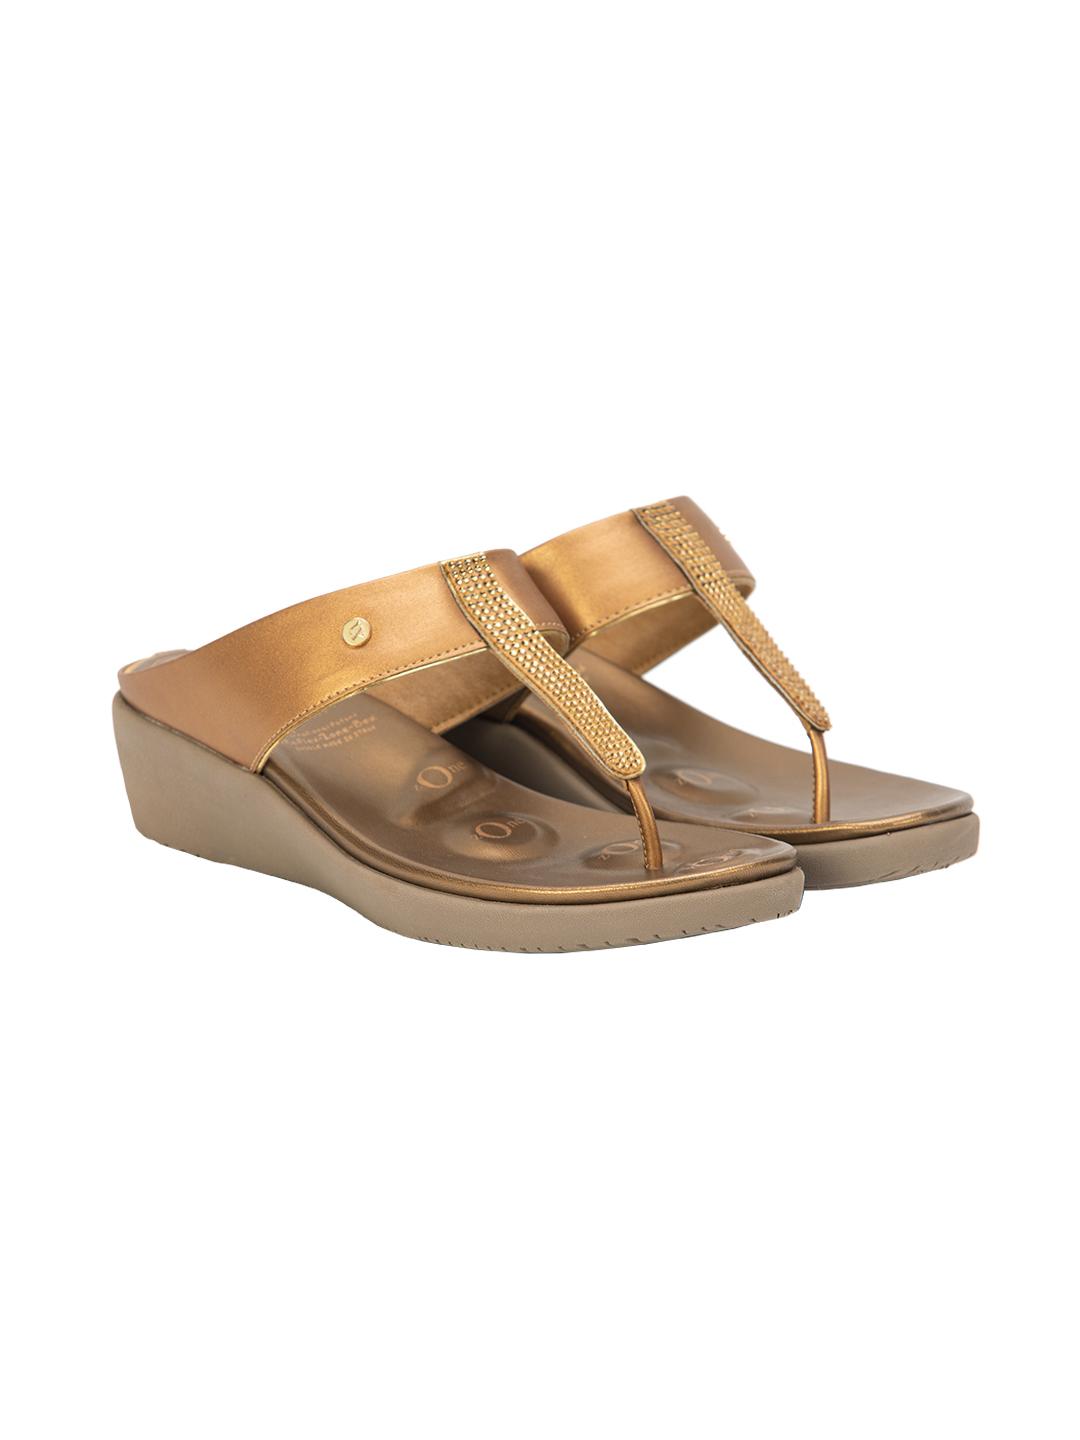 Buy Von Wellx Germany Comfort Silken Golden Slippers Online in Dubai